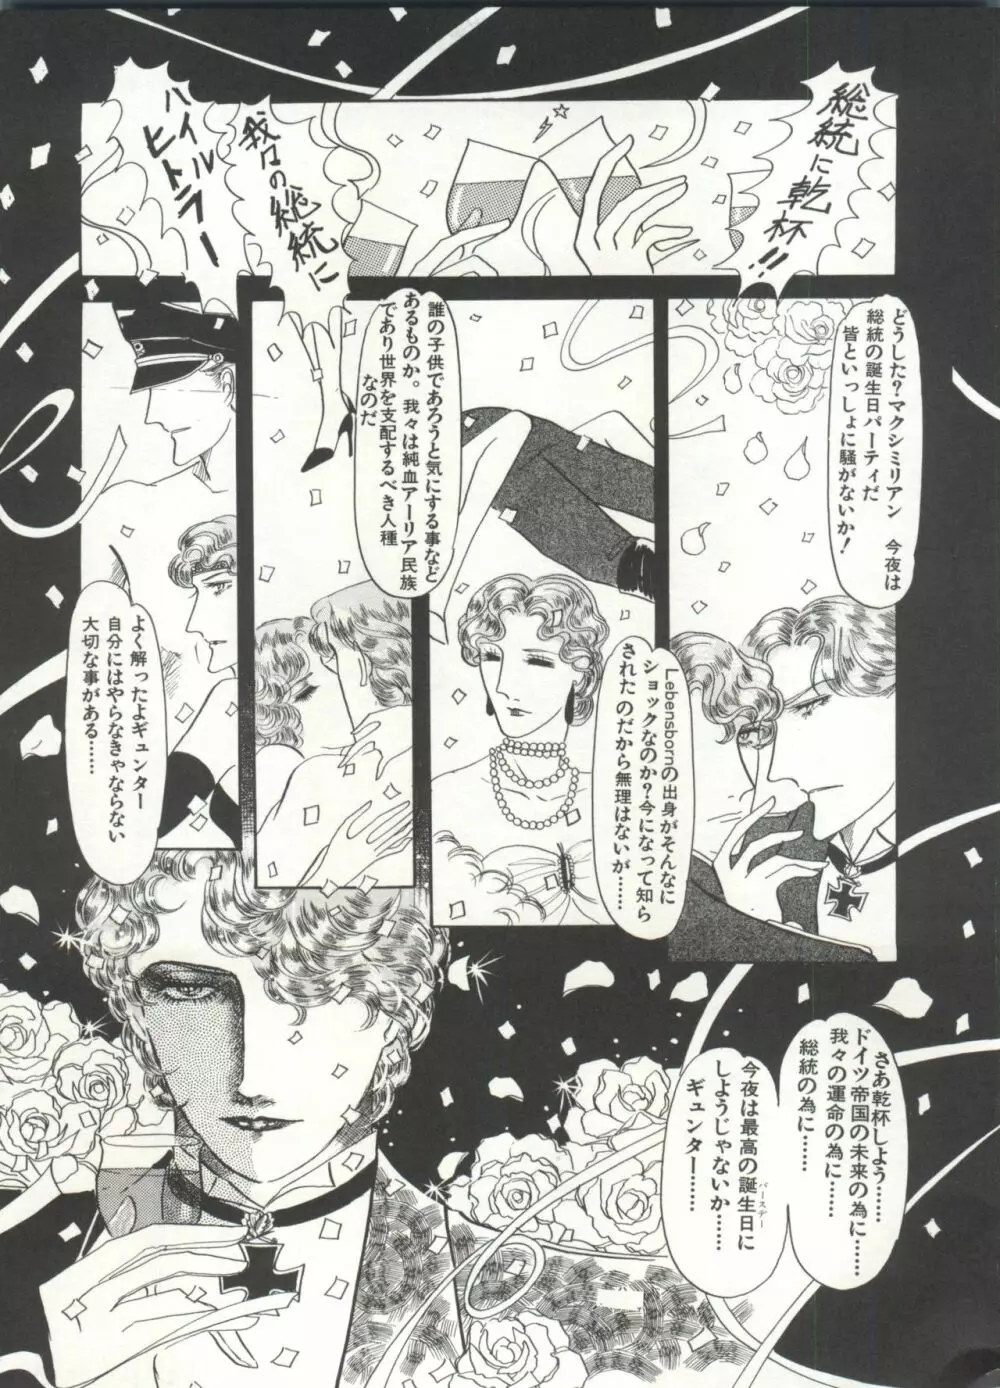 [Anthology] 美少女症候群(2) Lolita syndrome (よろず) 186ページ